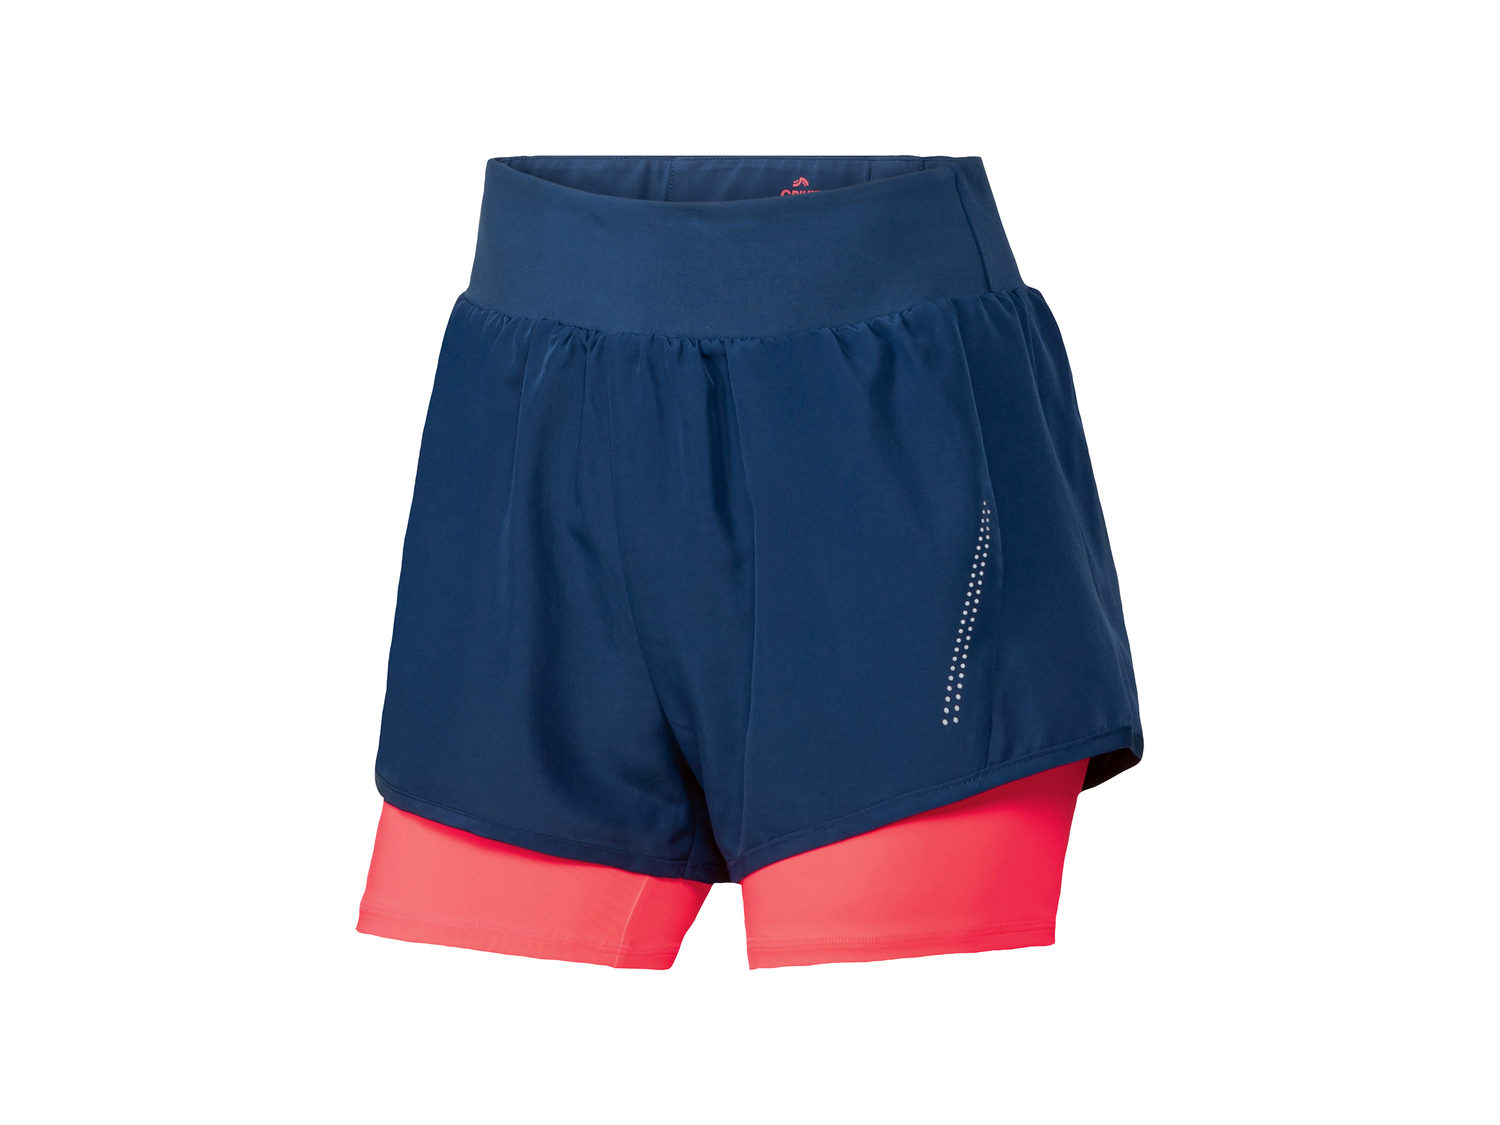 Shorts sportivi da donna Crivit, prezzo 7.99 &#8364; 
Misure: S-L 
- Con dettagli ...